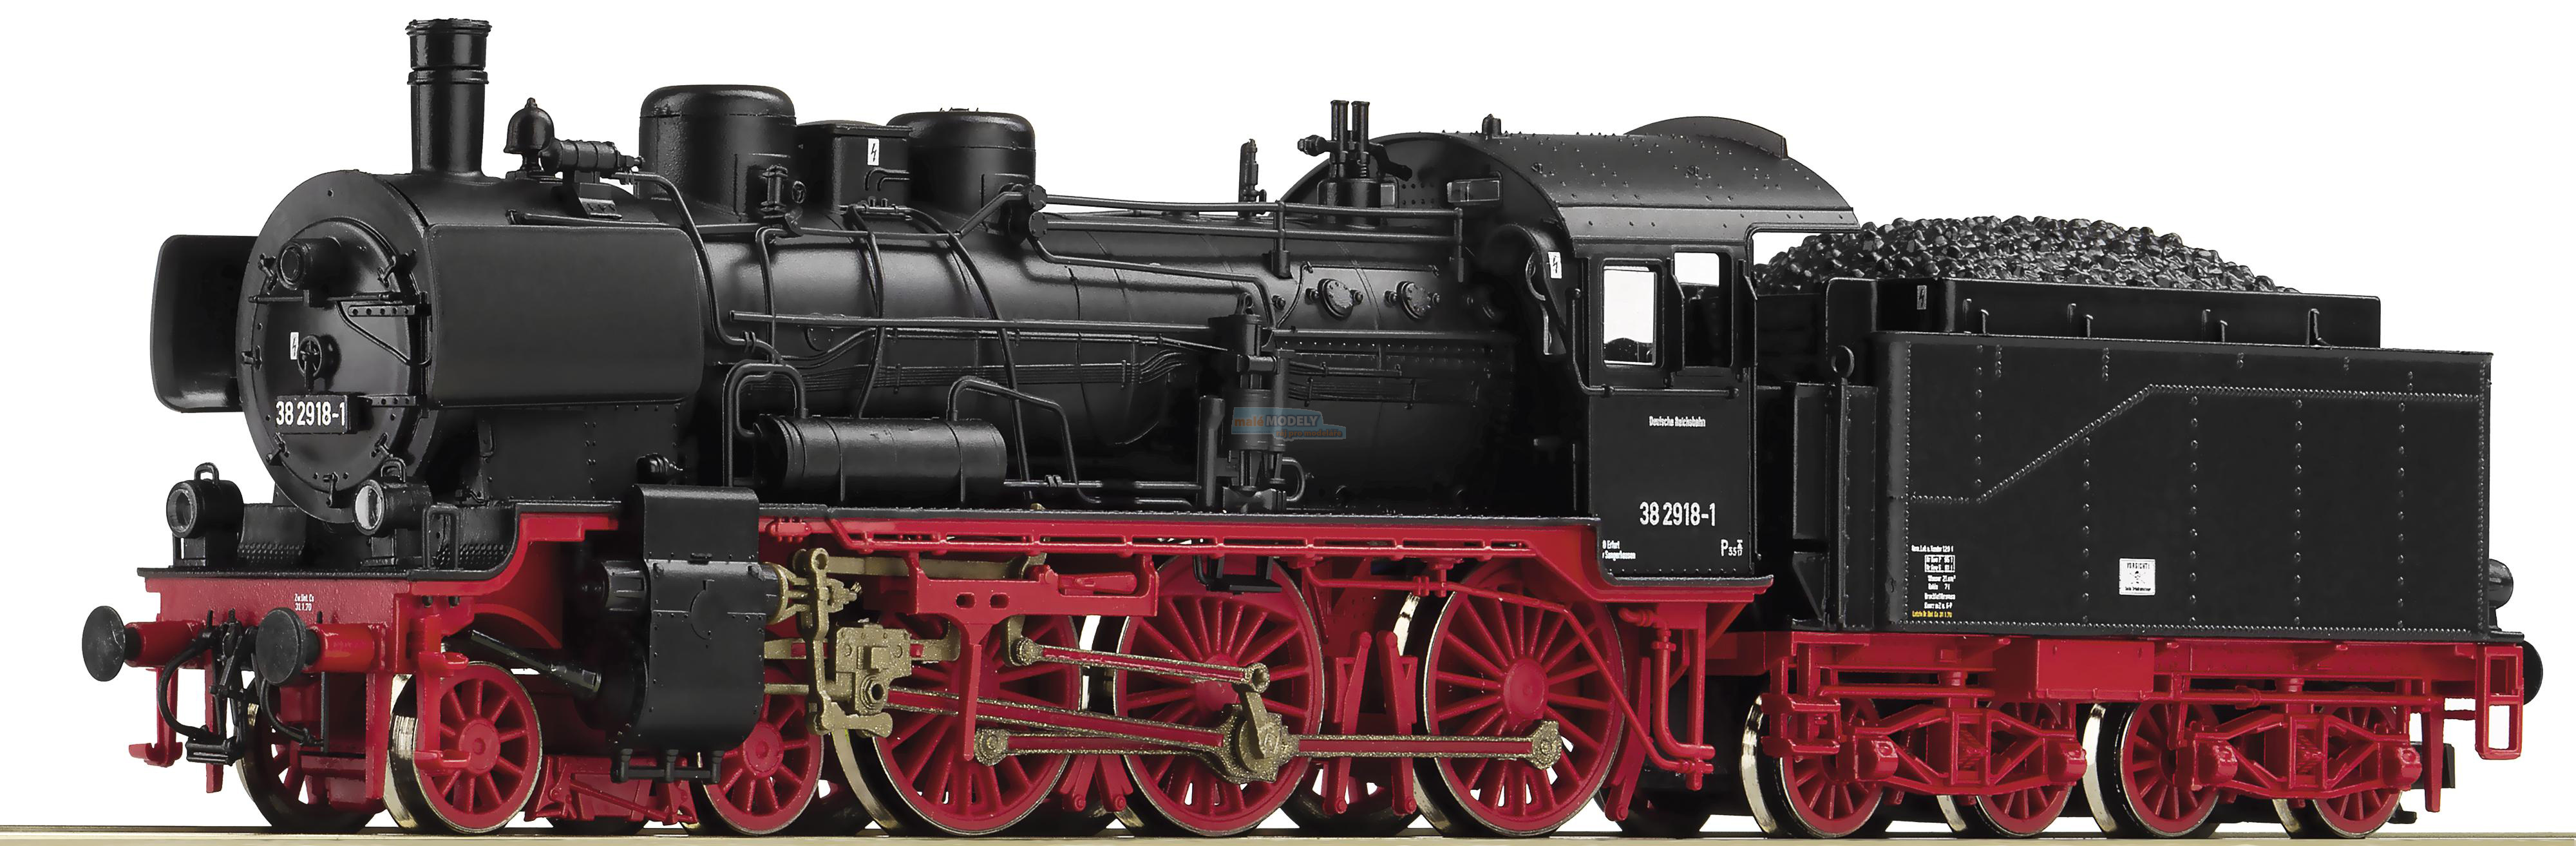 Parní lokomotiva 38